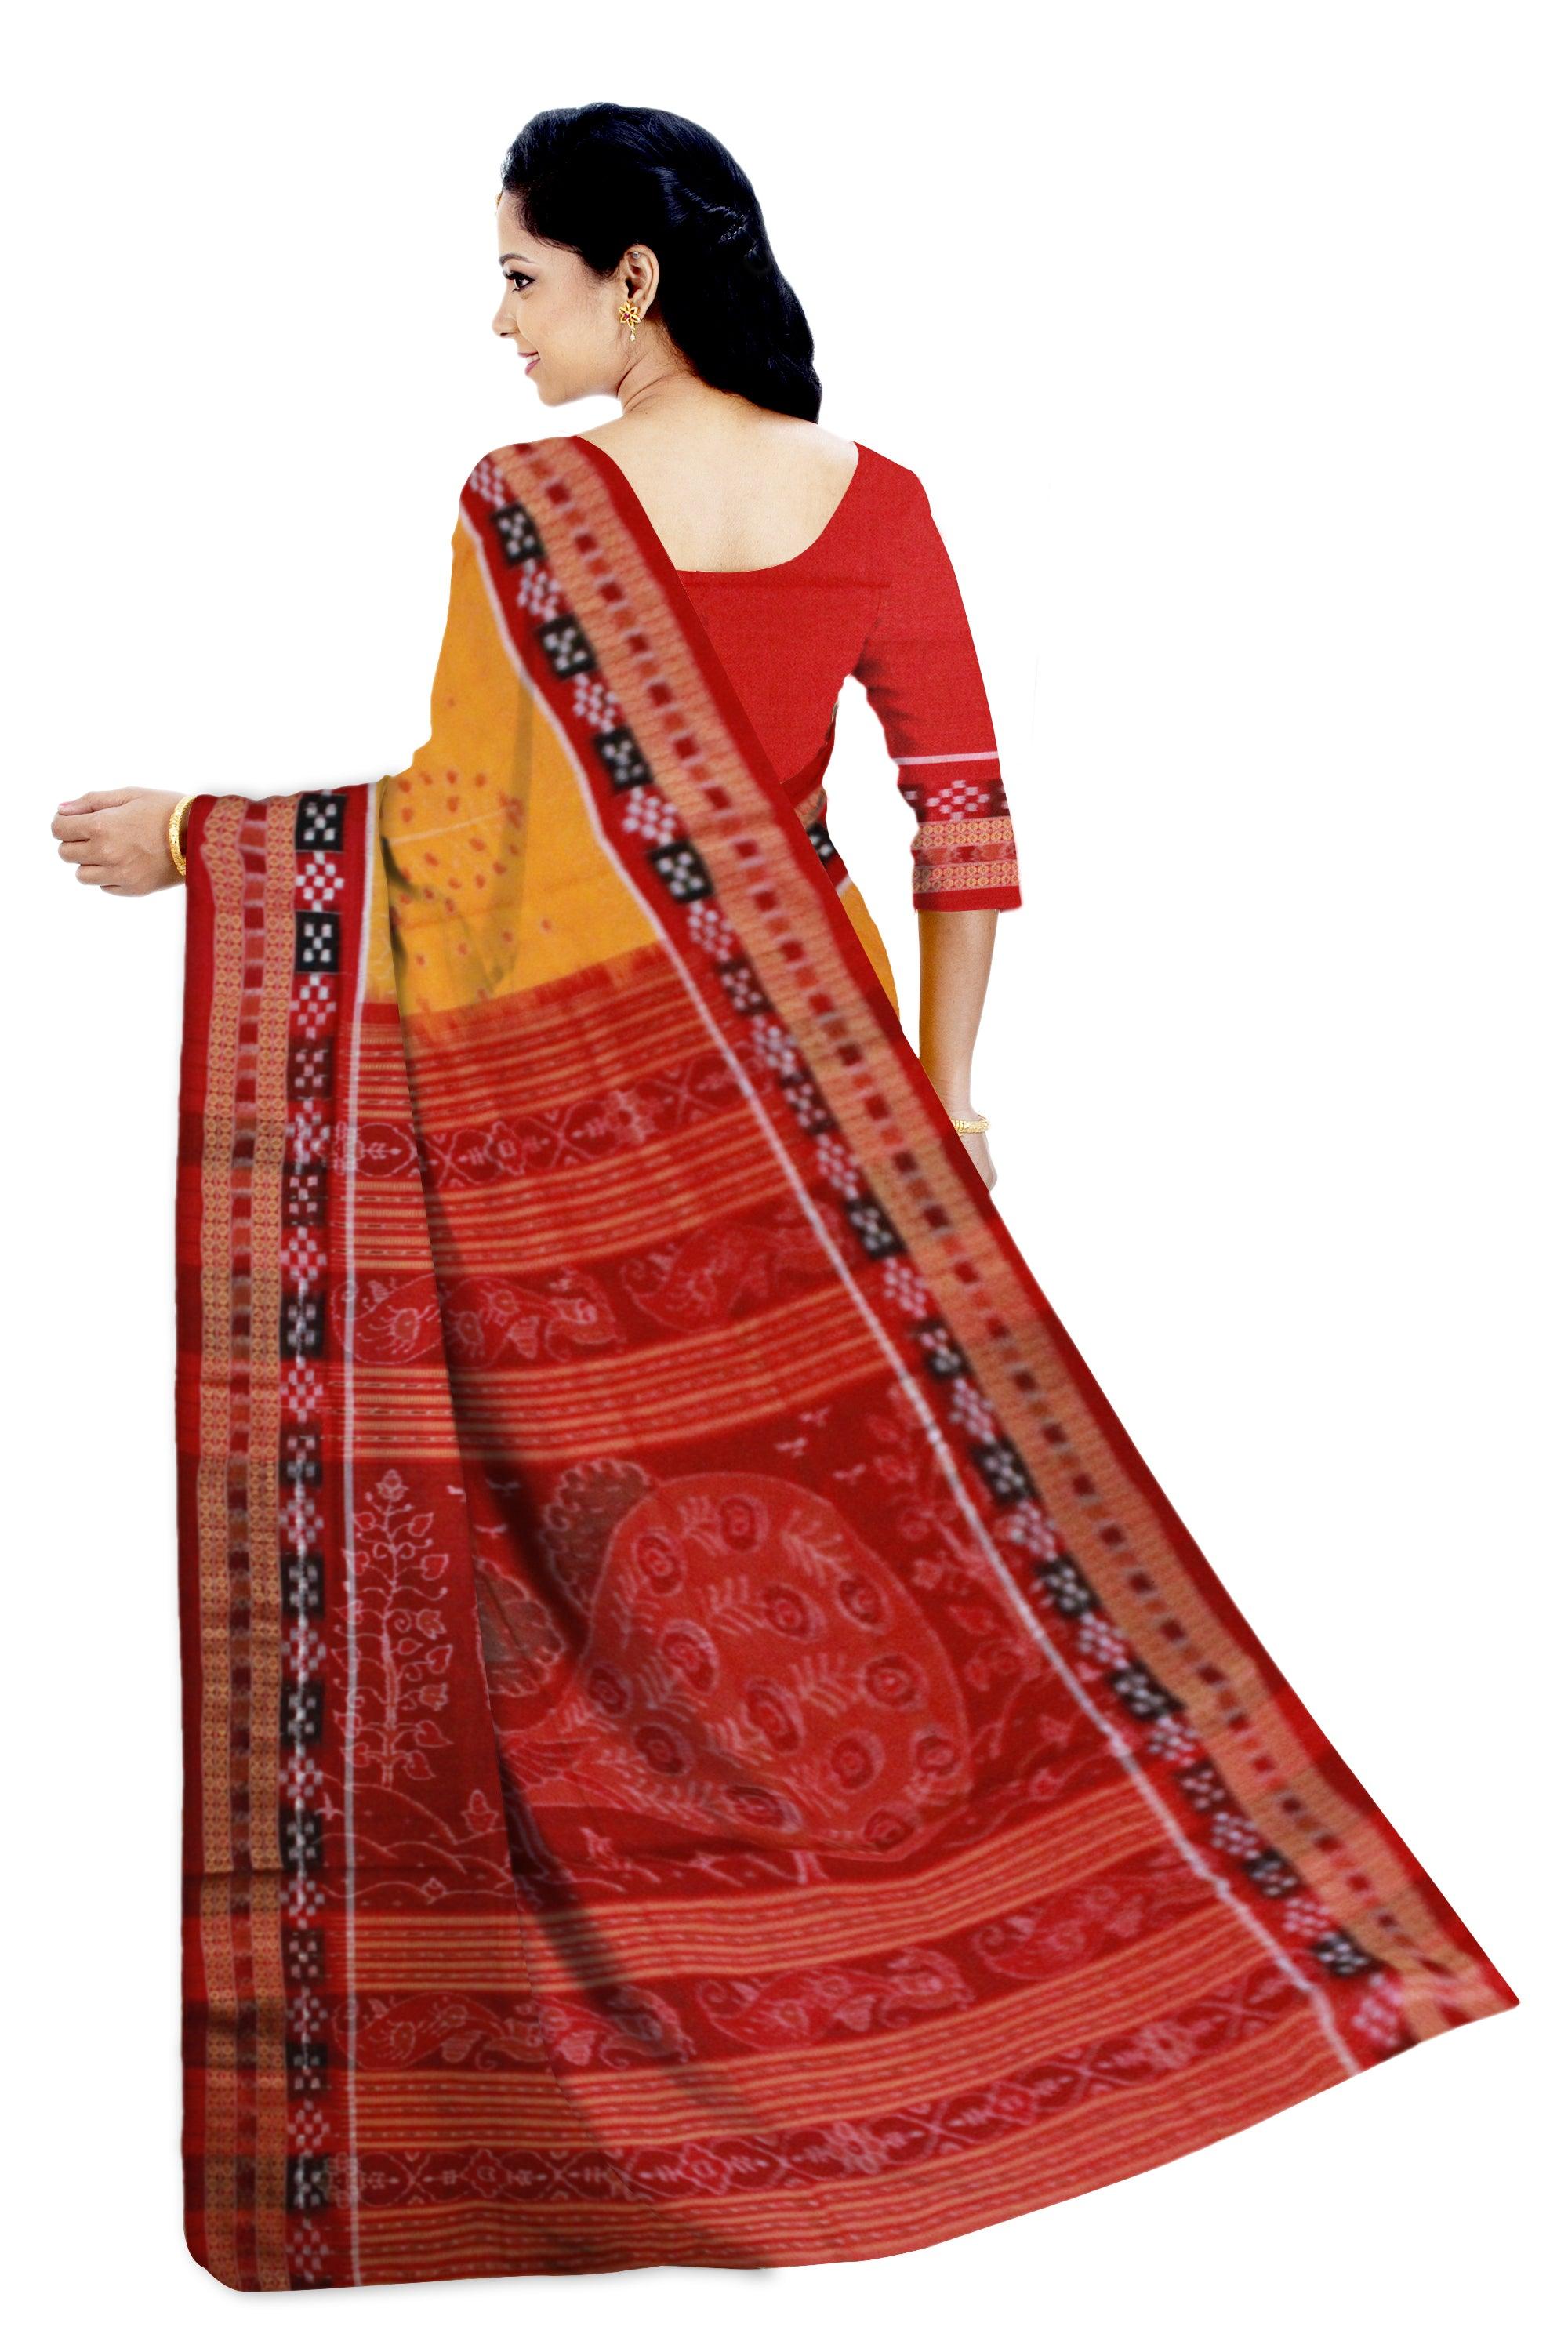 Dhadi Pasapali Sambalpuri saree Bandha Design in Yellow Colour - Koshali Arts & Crafts Enterprise